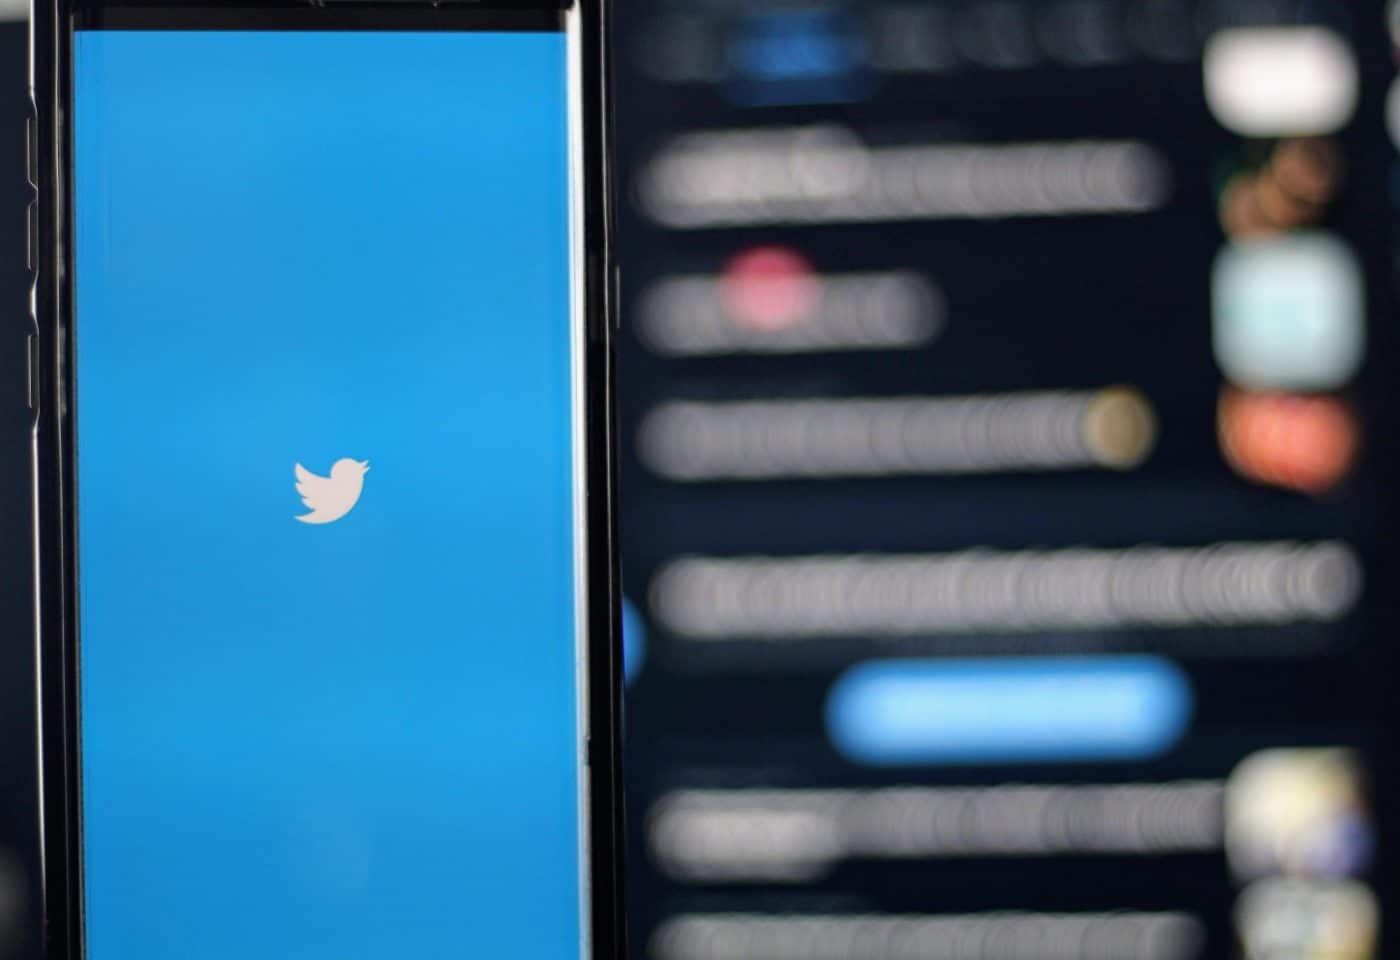 Le logo de Twitter sur un smartphone.